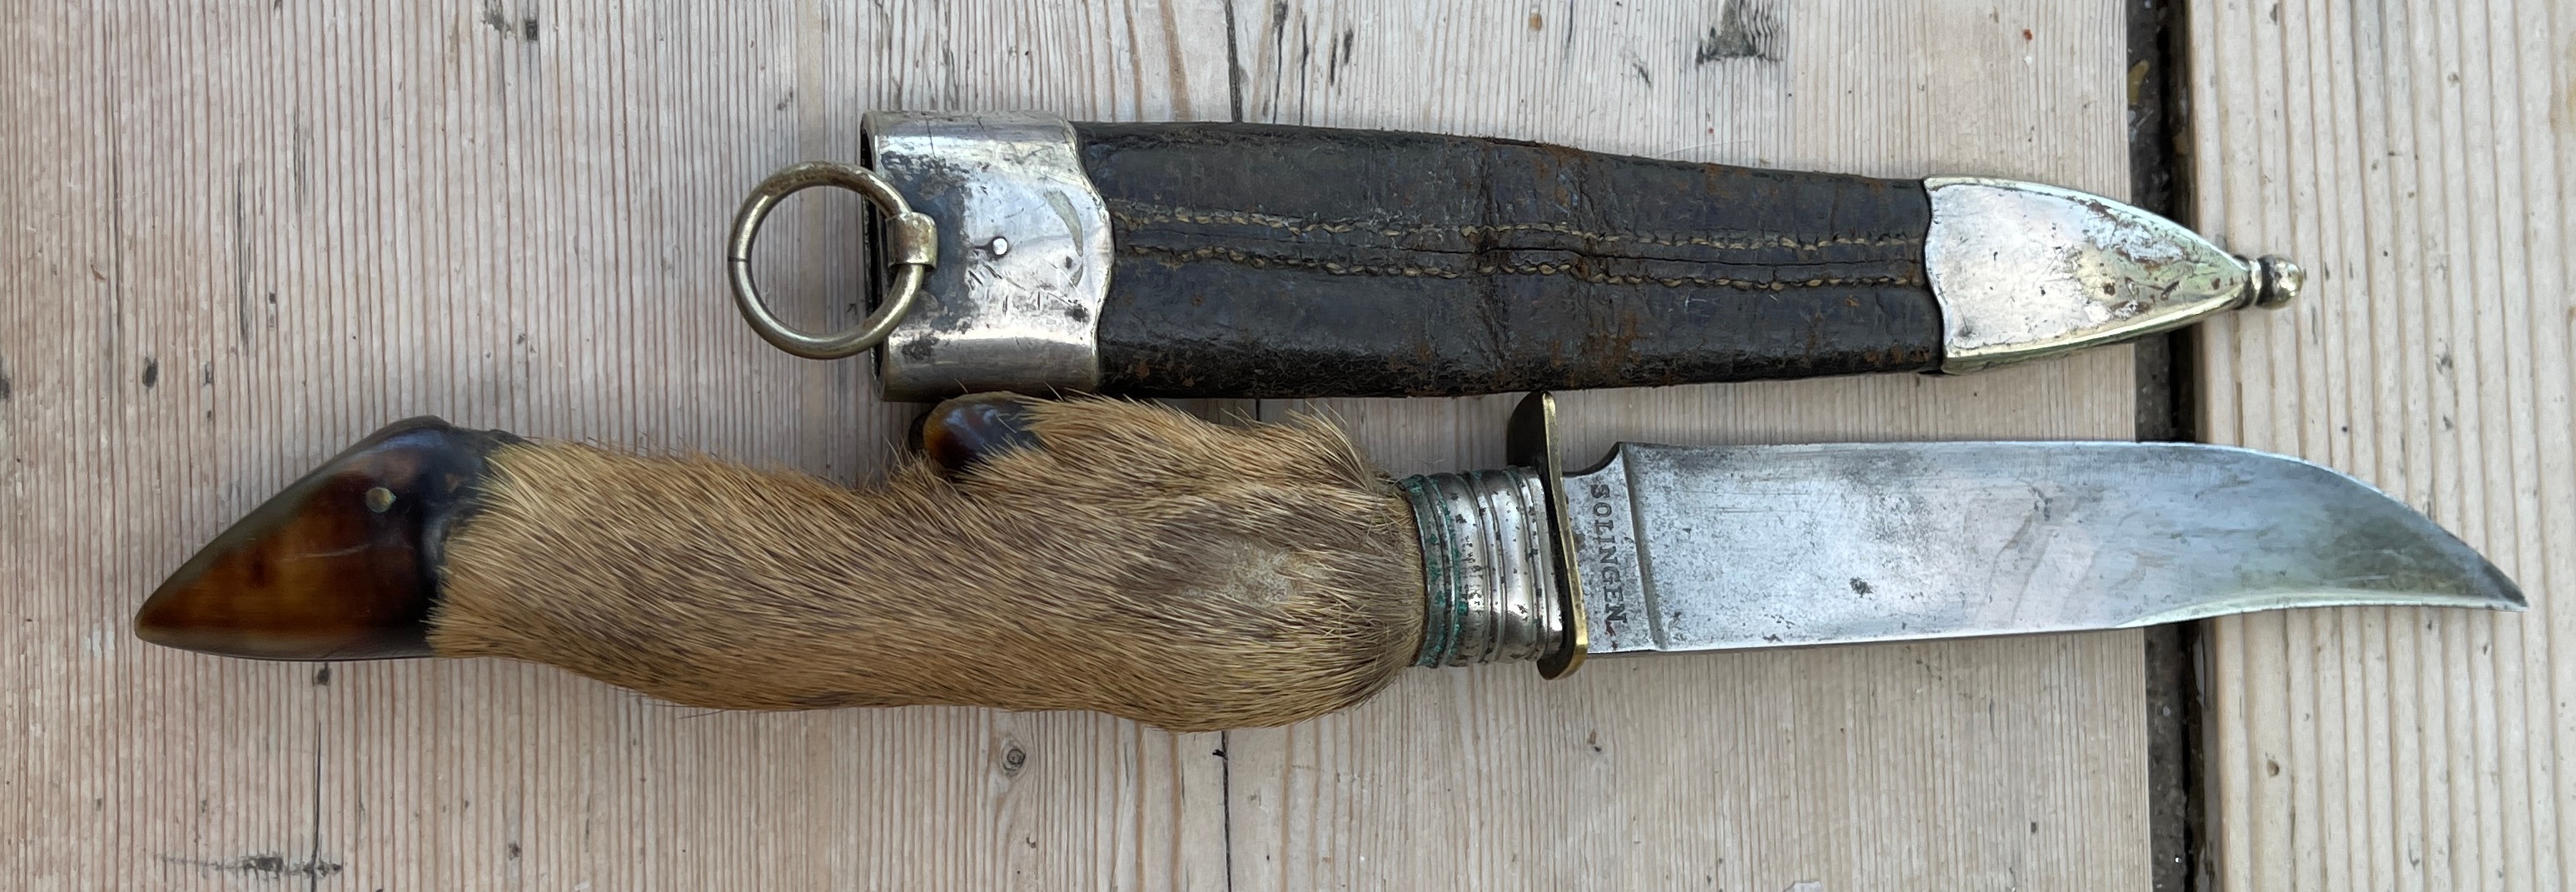 Antique/Vintage? Solingen Blade Deer Foot Handle Knife 11 1/2" - 29cm long. - Image 4 of 6